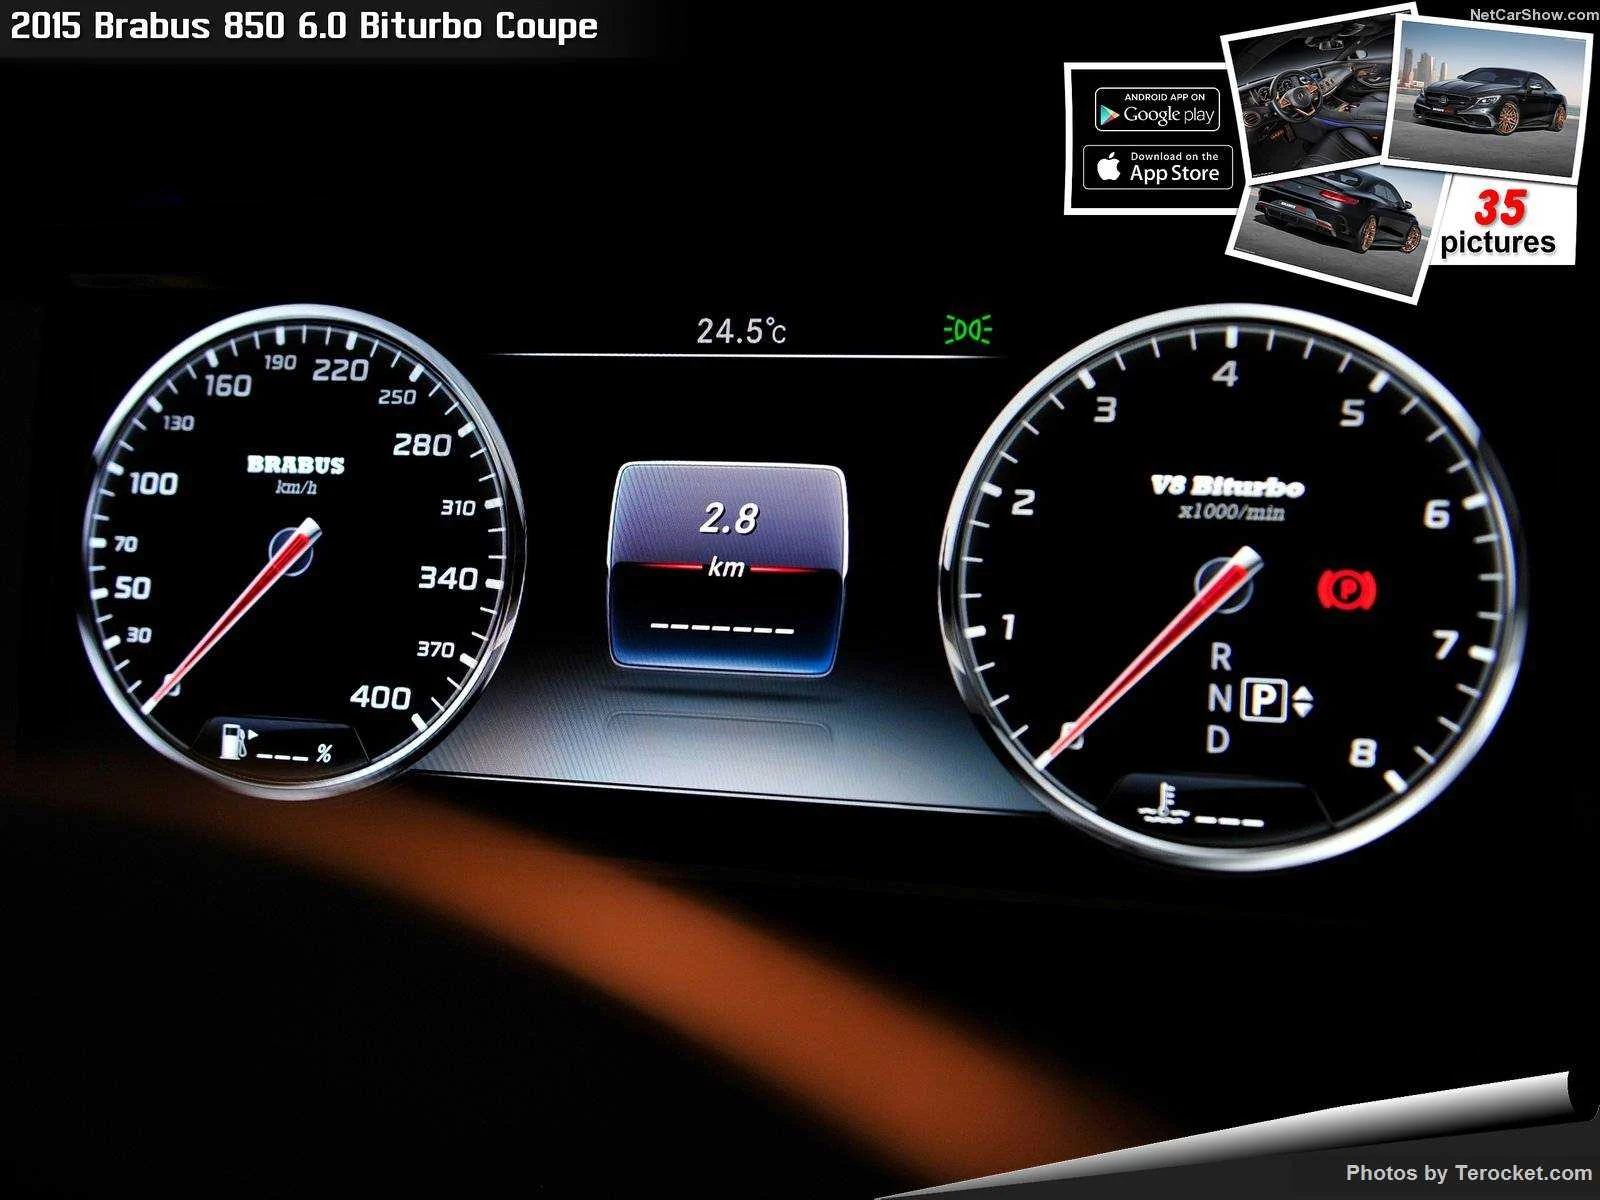 Hình ảnh xe ô tô Brabus 850 6.0 Biturbo Coupe 2015 & nội ngoại thất